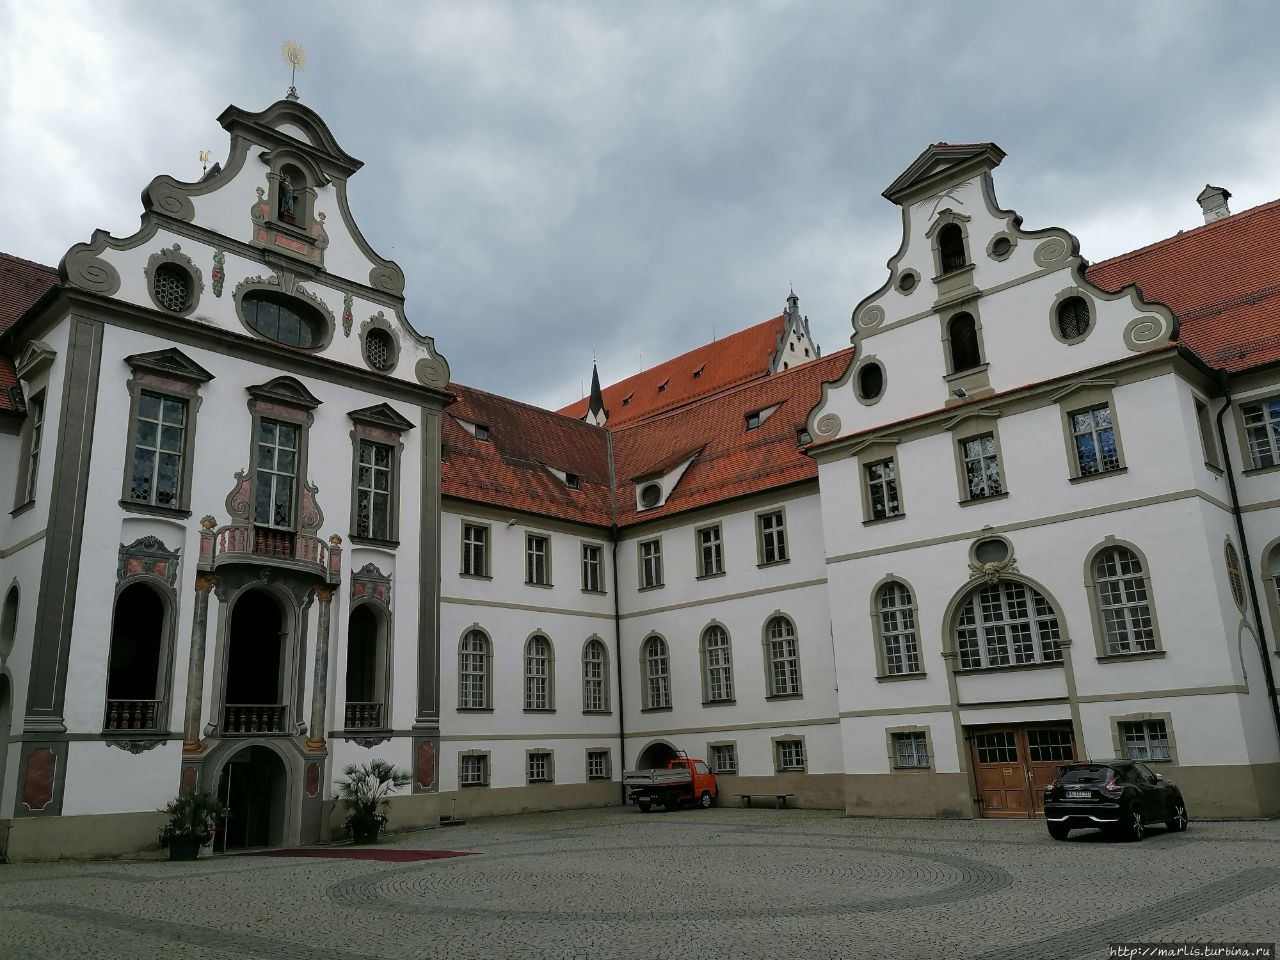 Монастырь Санкт-Манг, ныне городской музей Фюссен, Германия